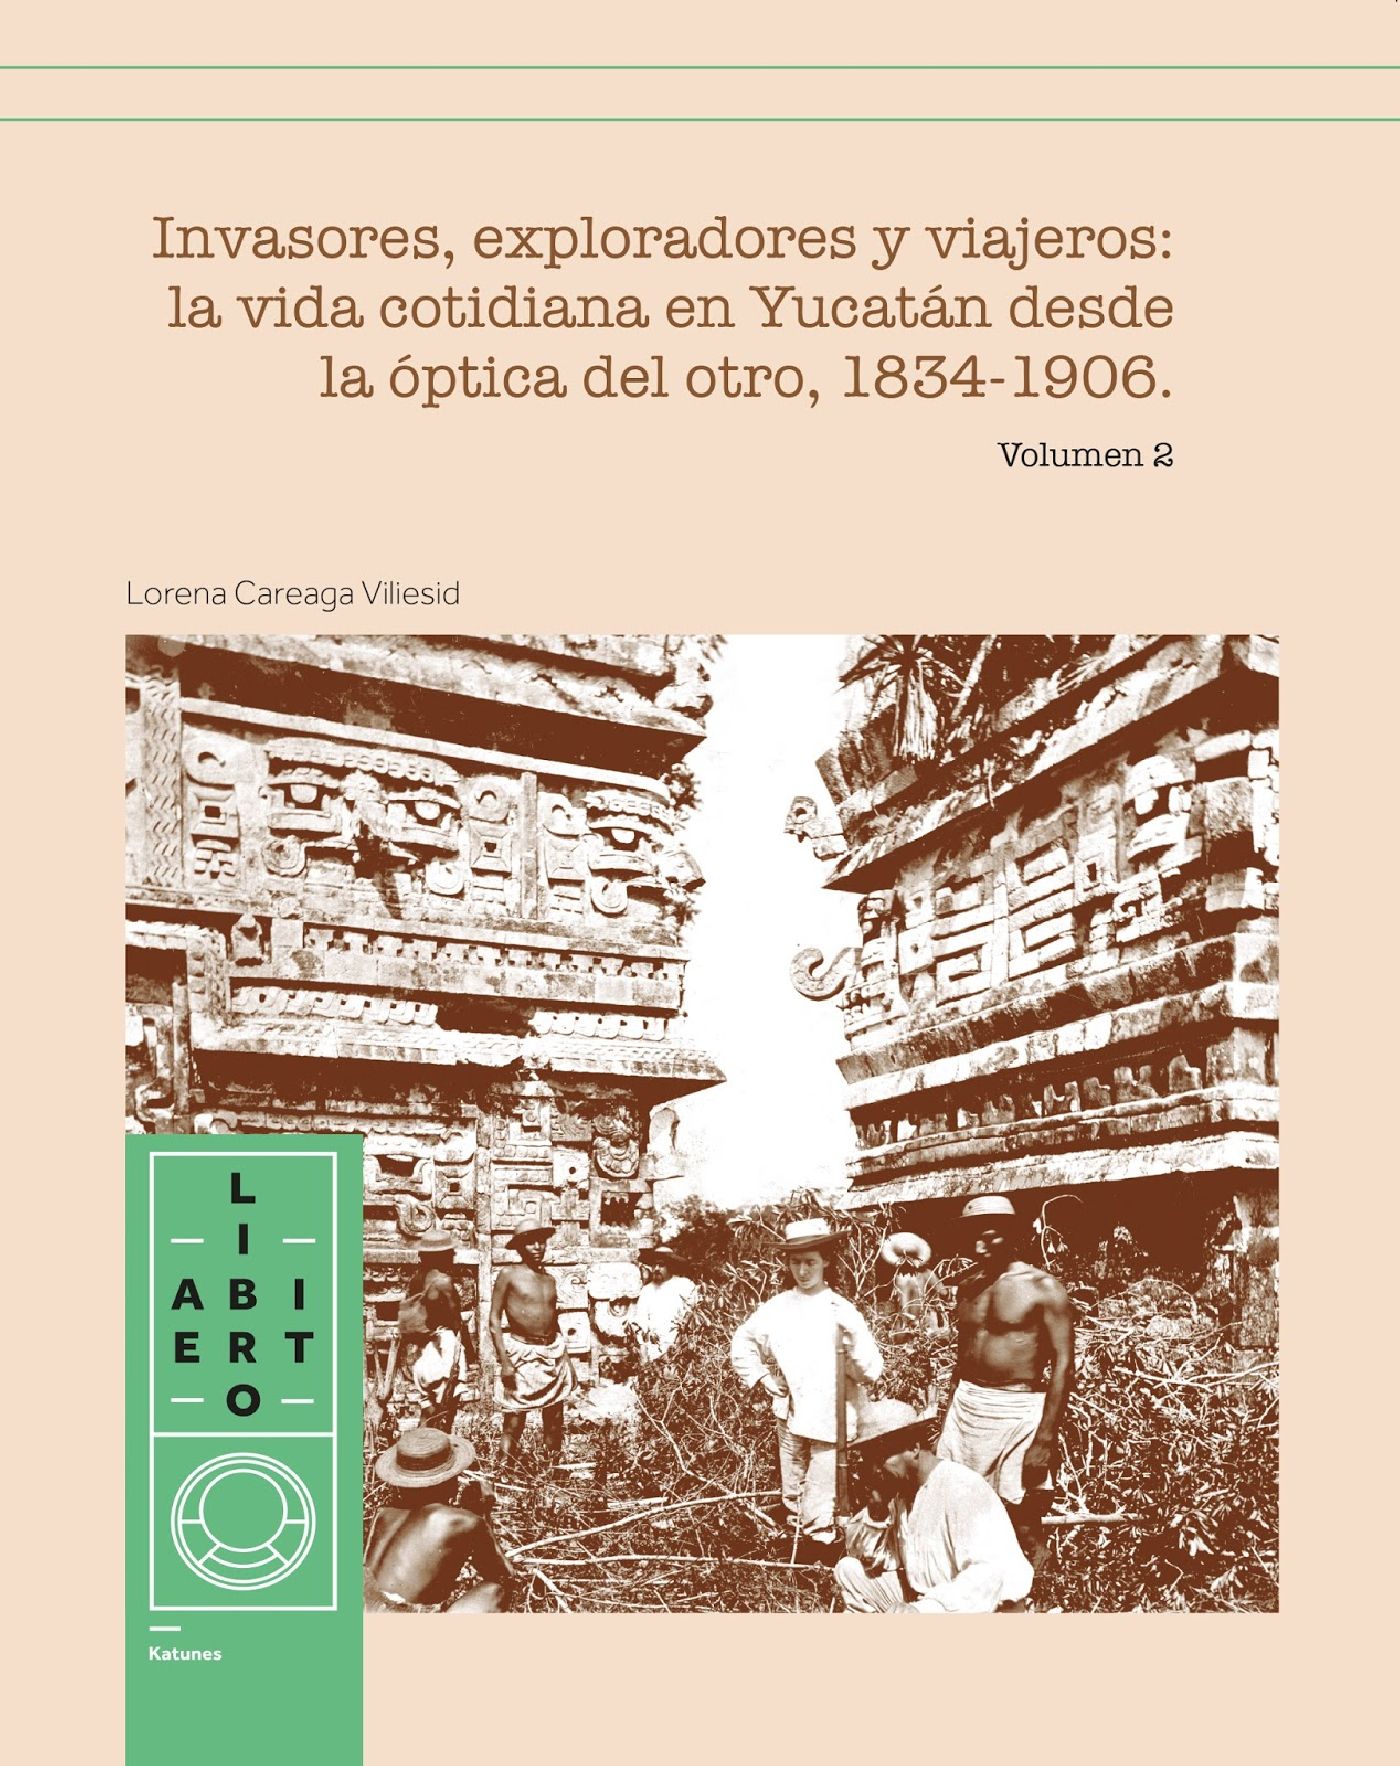 Tesis doctoral de la historia de Yucatán,  referente para estudio de la región